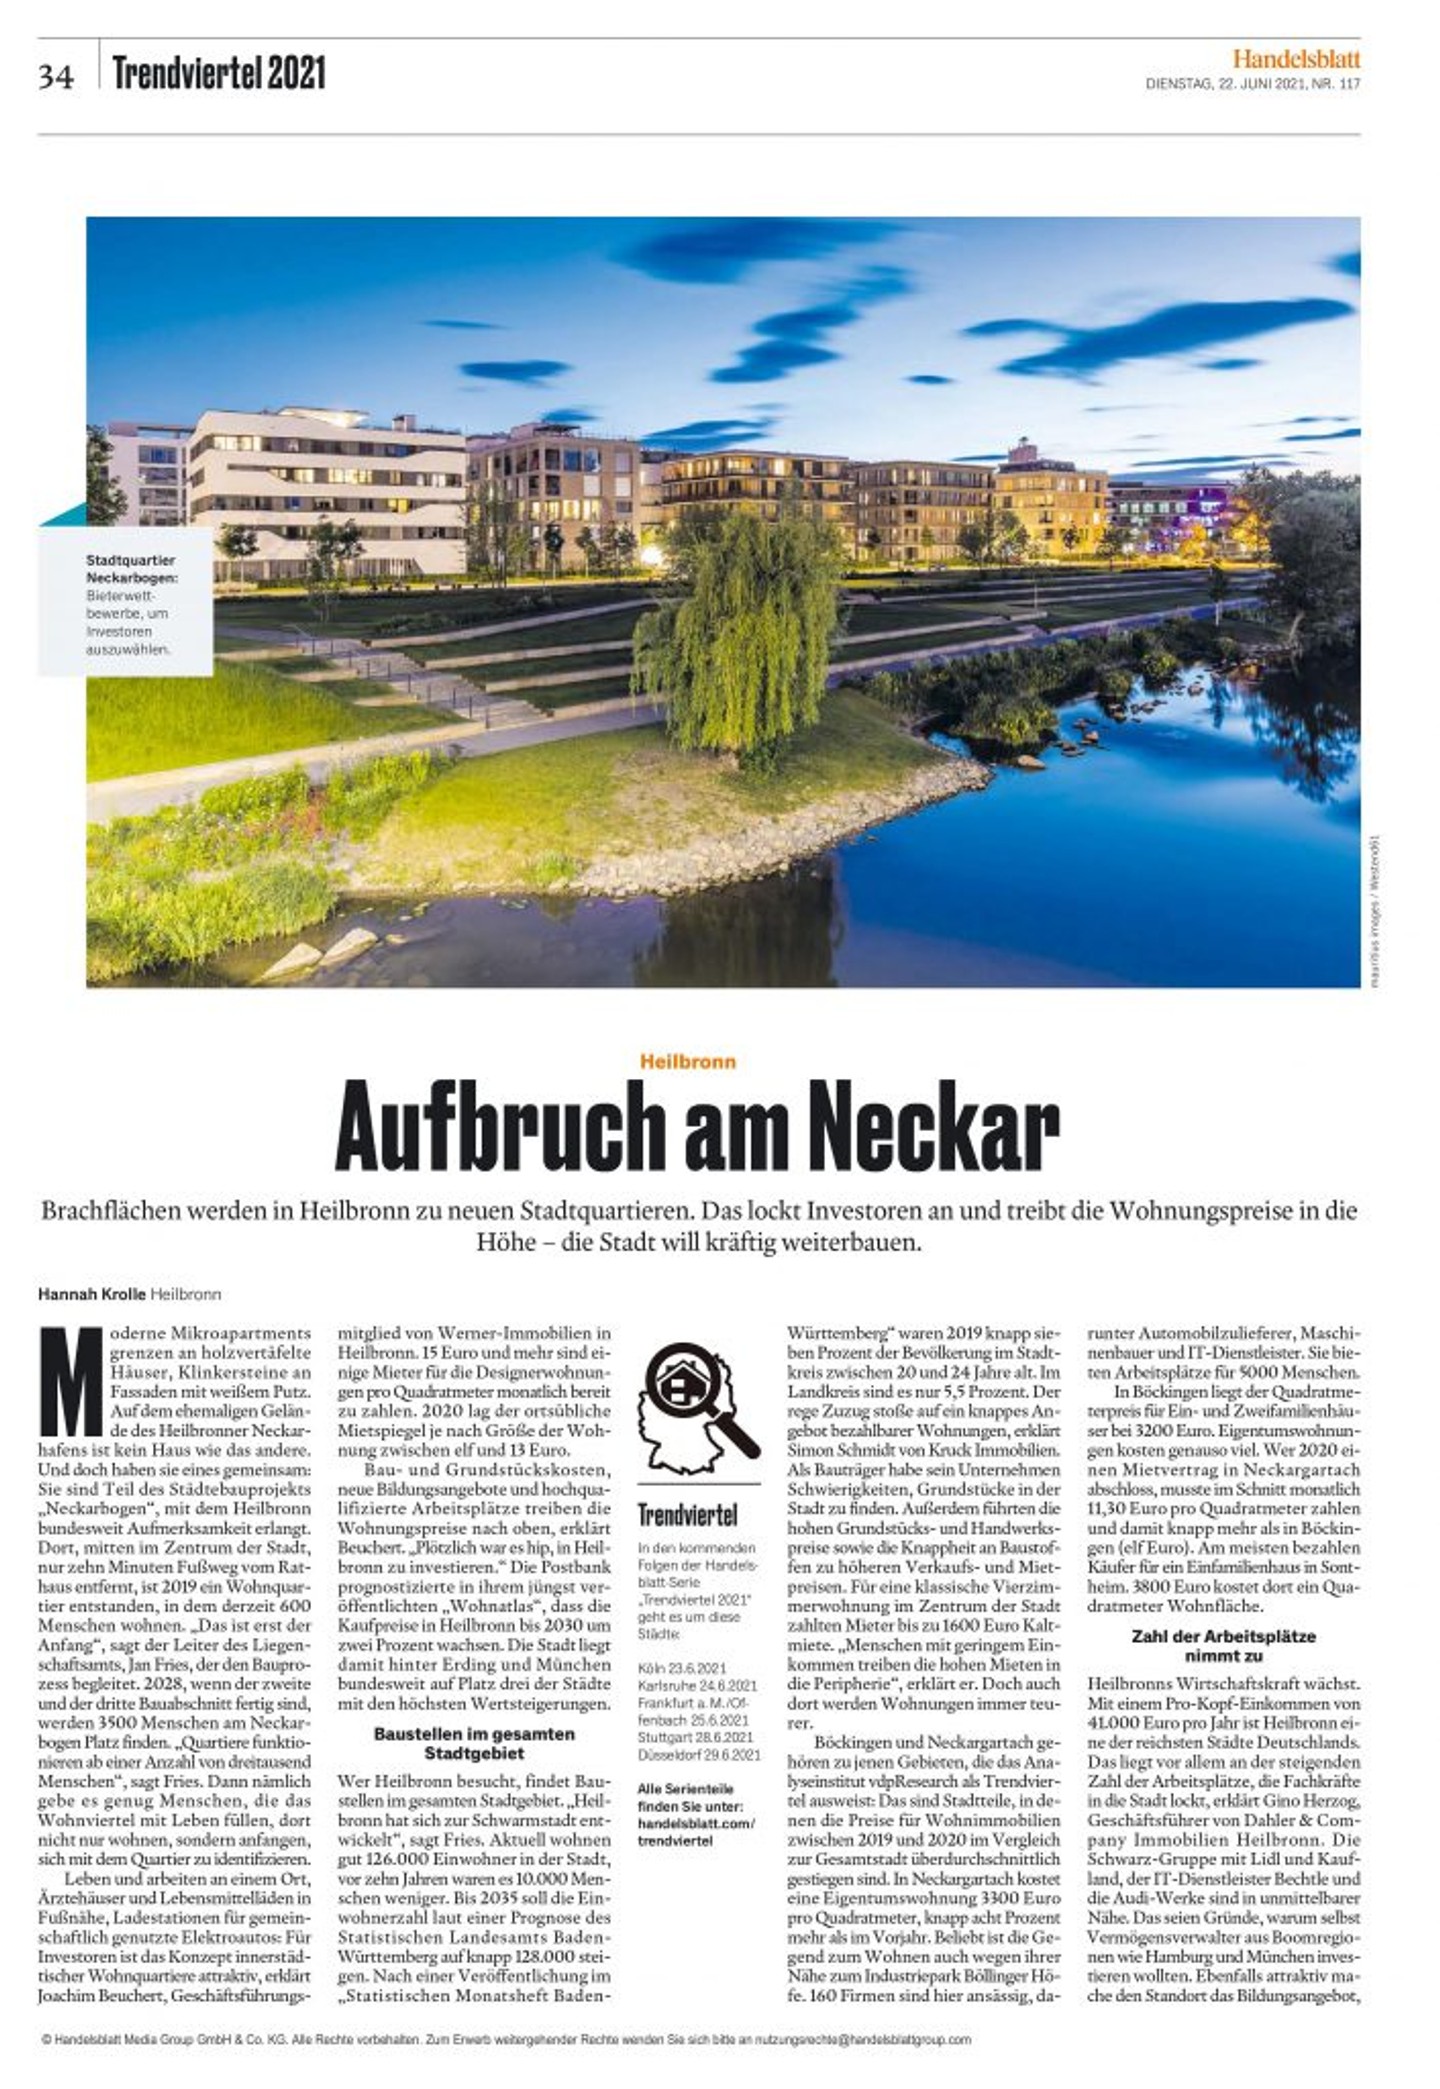 Immobilienmakler Heilbronn_Artikel_Handelsblatt
					©Hannah Knolle
				